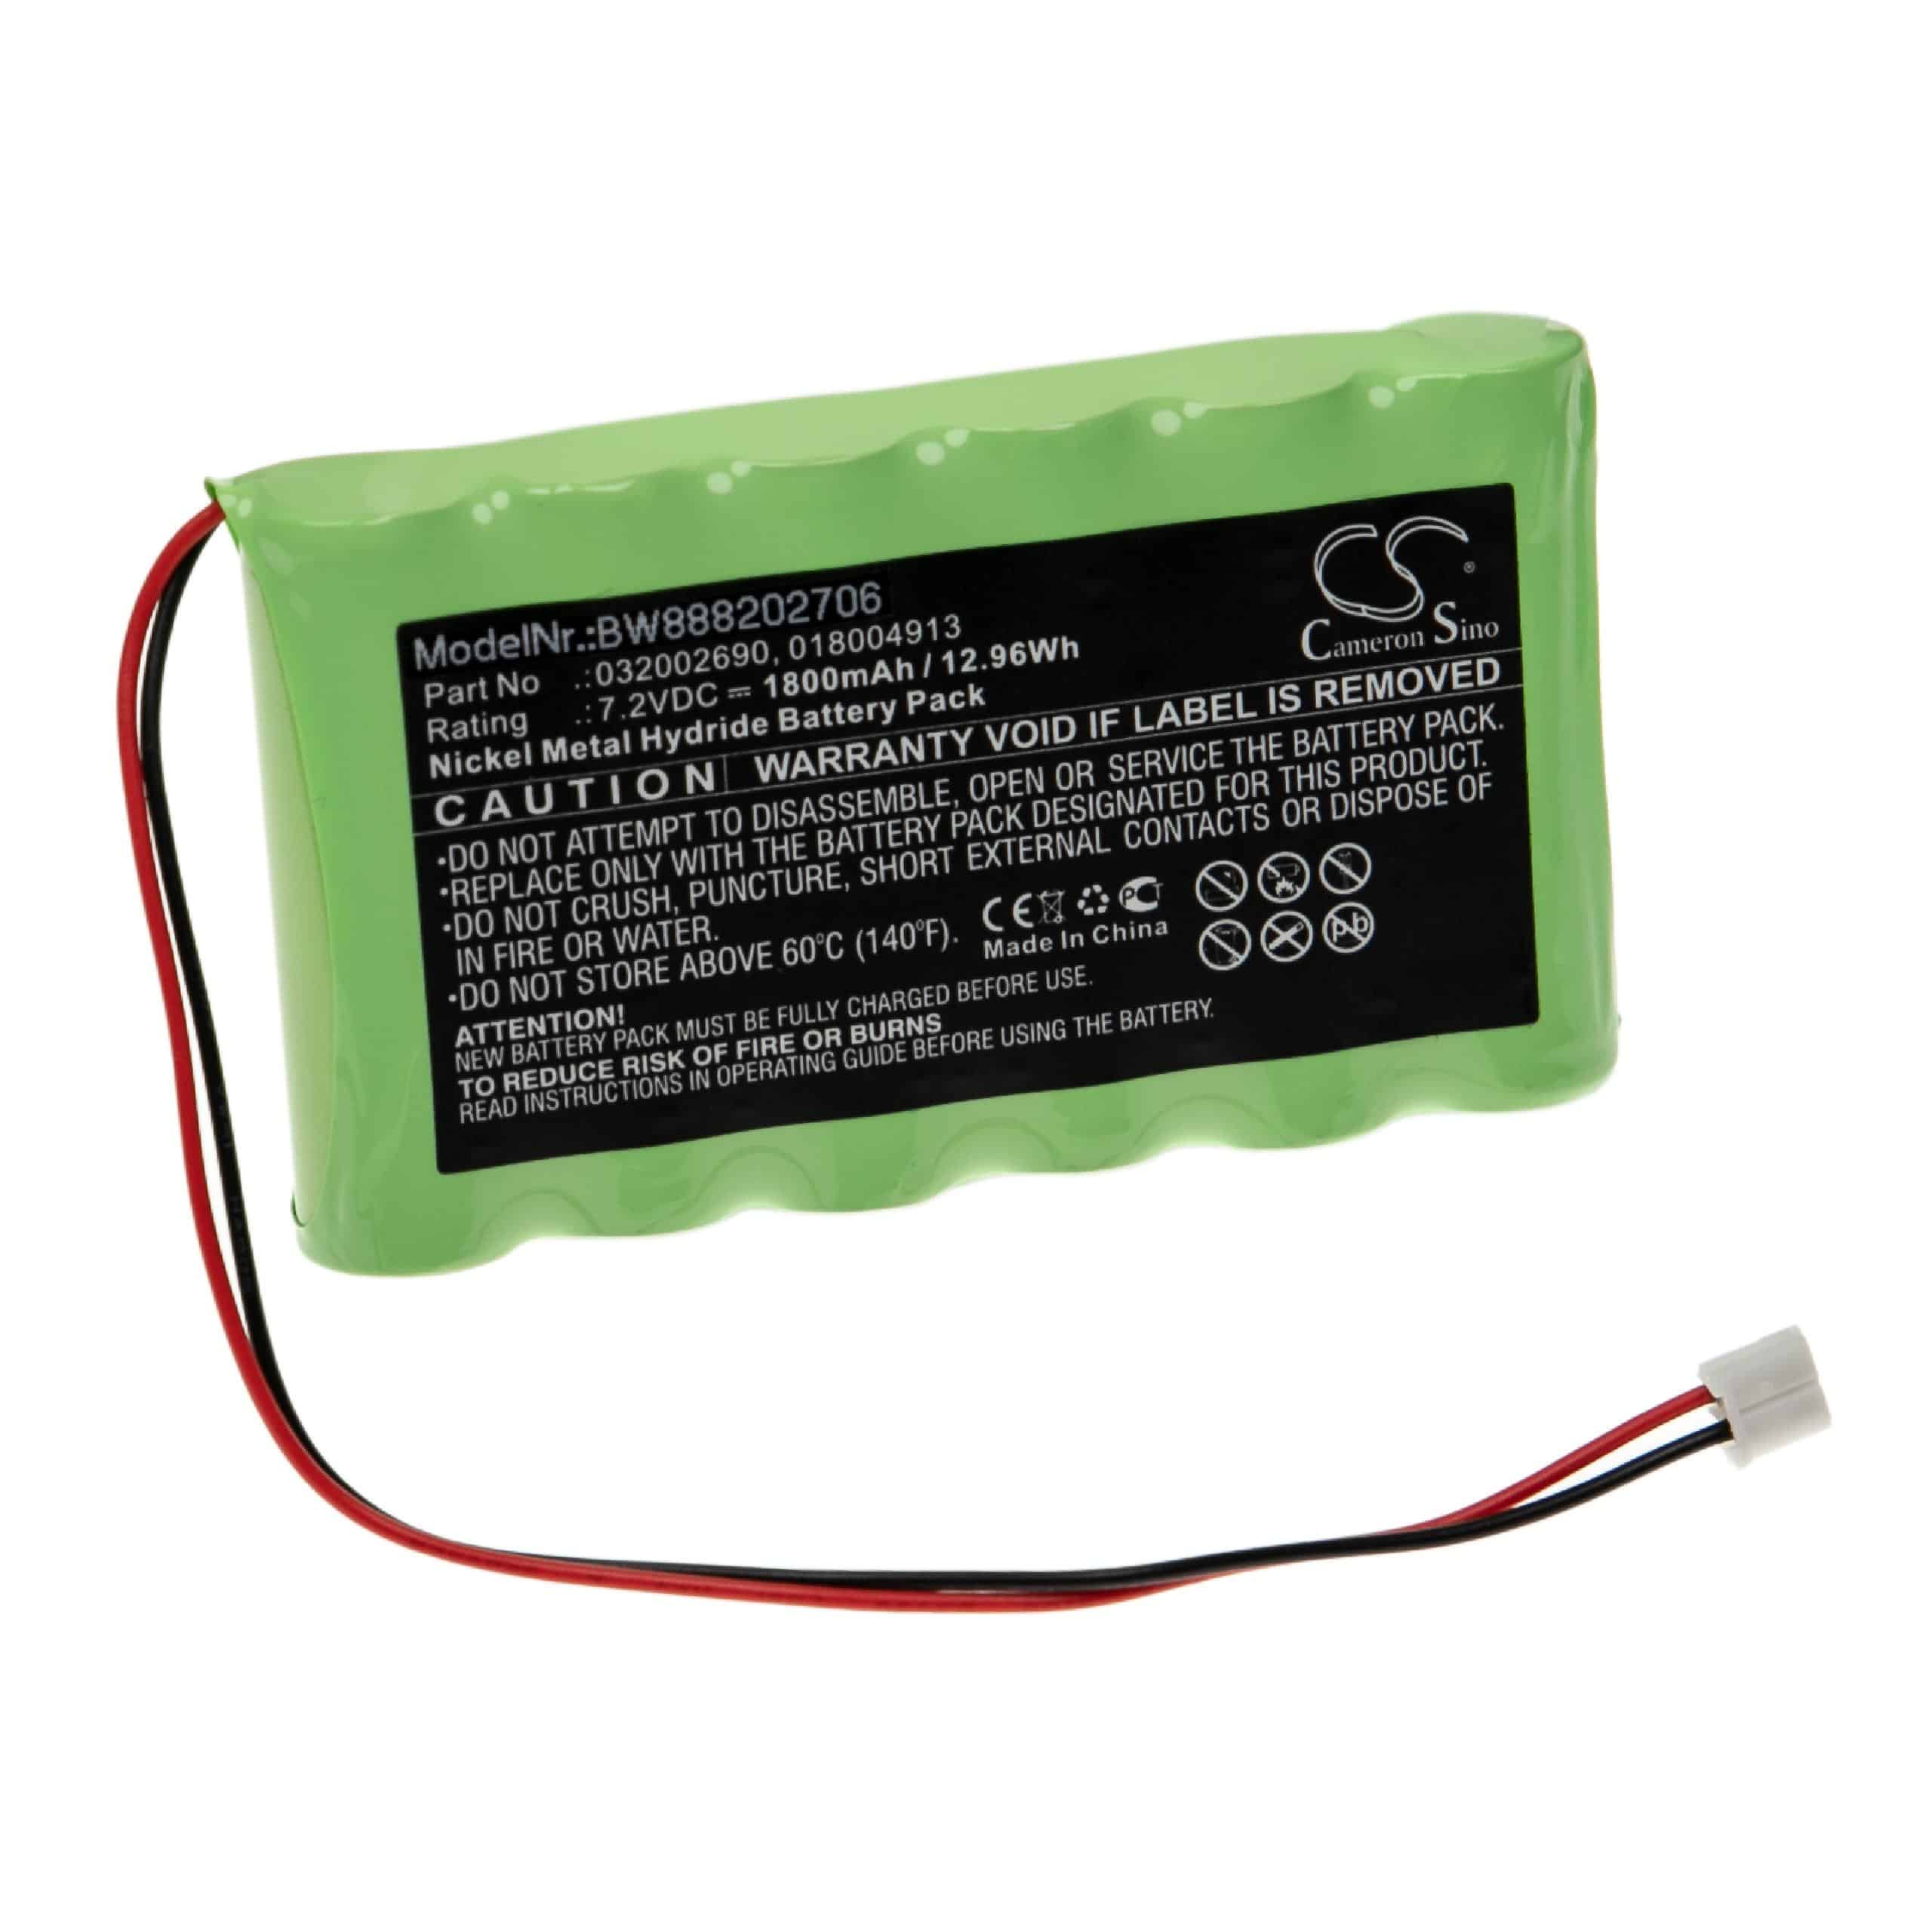 Batterie remplace Compex 018004913, 032002690, 018.004.913 pour appareil médical - 1800mAh 7,2V NiMH